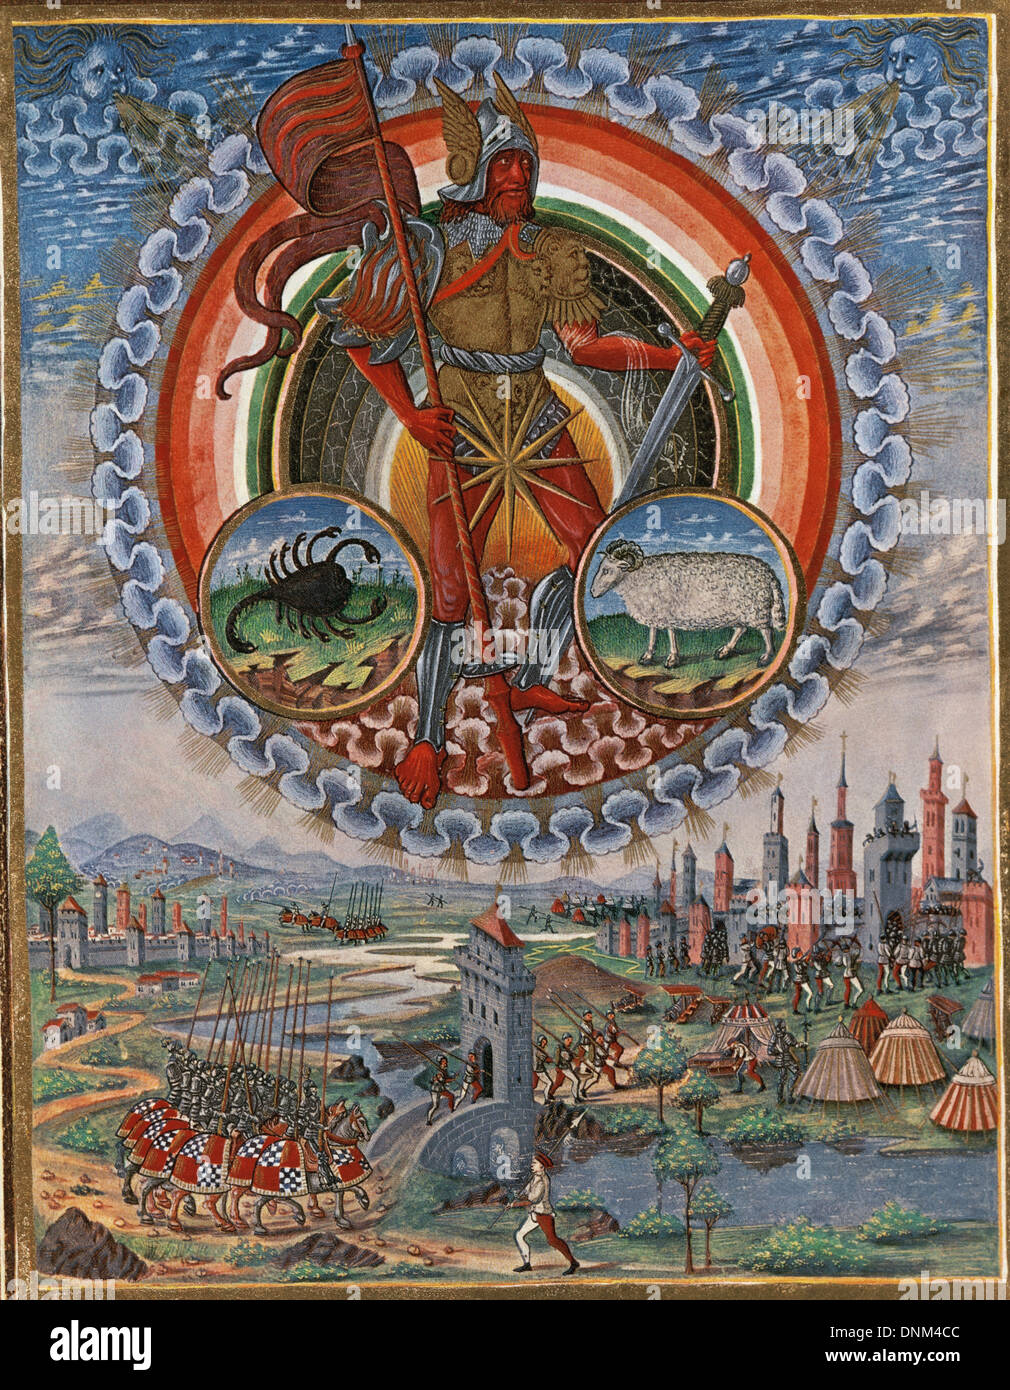 De Sphaera (sfera). Illustrato da Cristoforo de Predis (1440-1486), 1470. Marte con il segno zodiacale dello Scorpione. Foto Stock